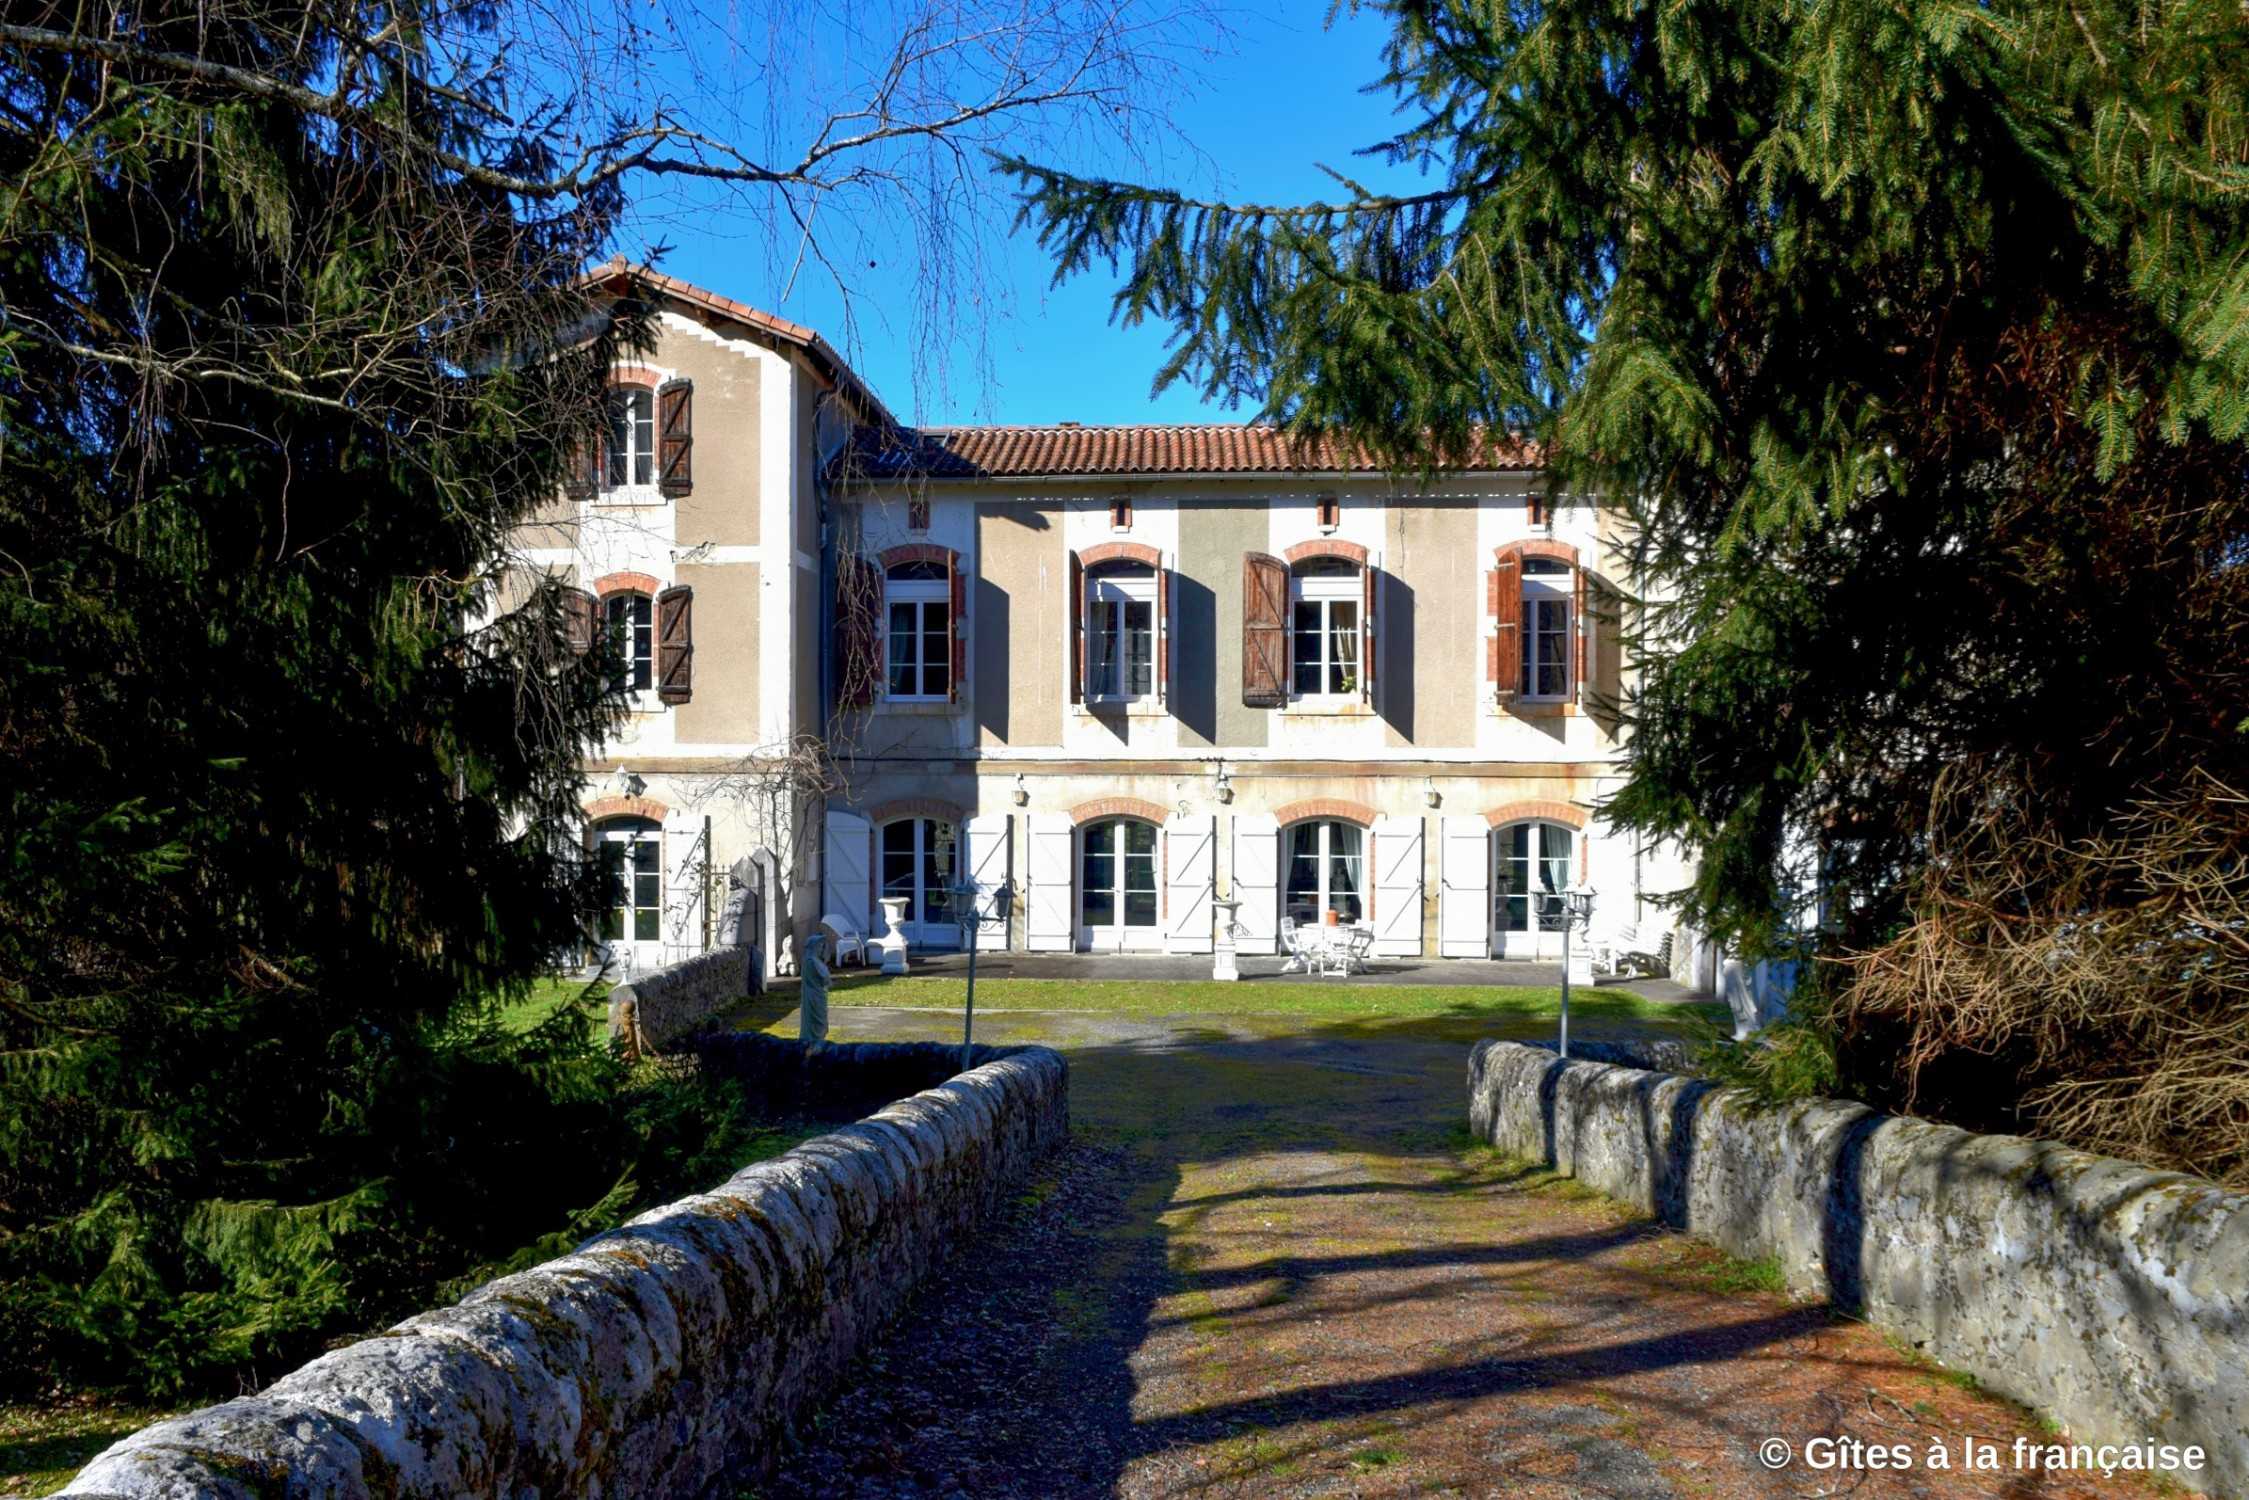 Fotos Historisches Schulgebäude als Ferienhaus/B&B, Pyrenäen